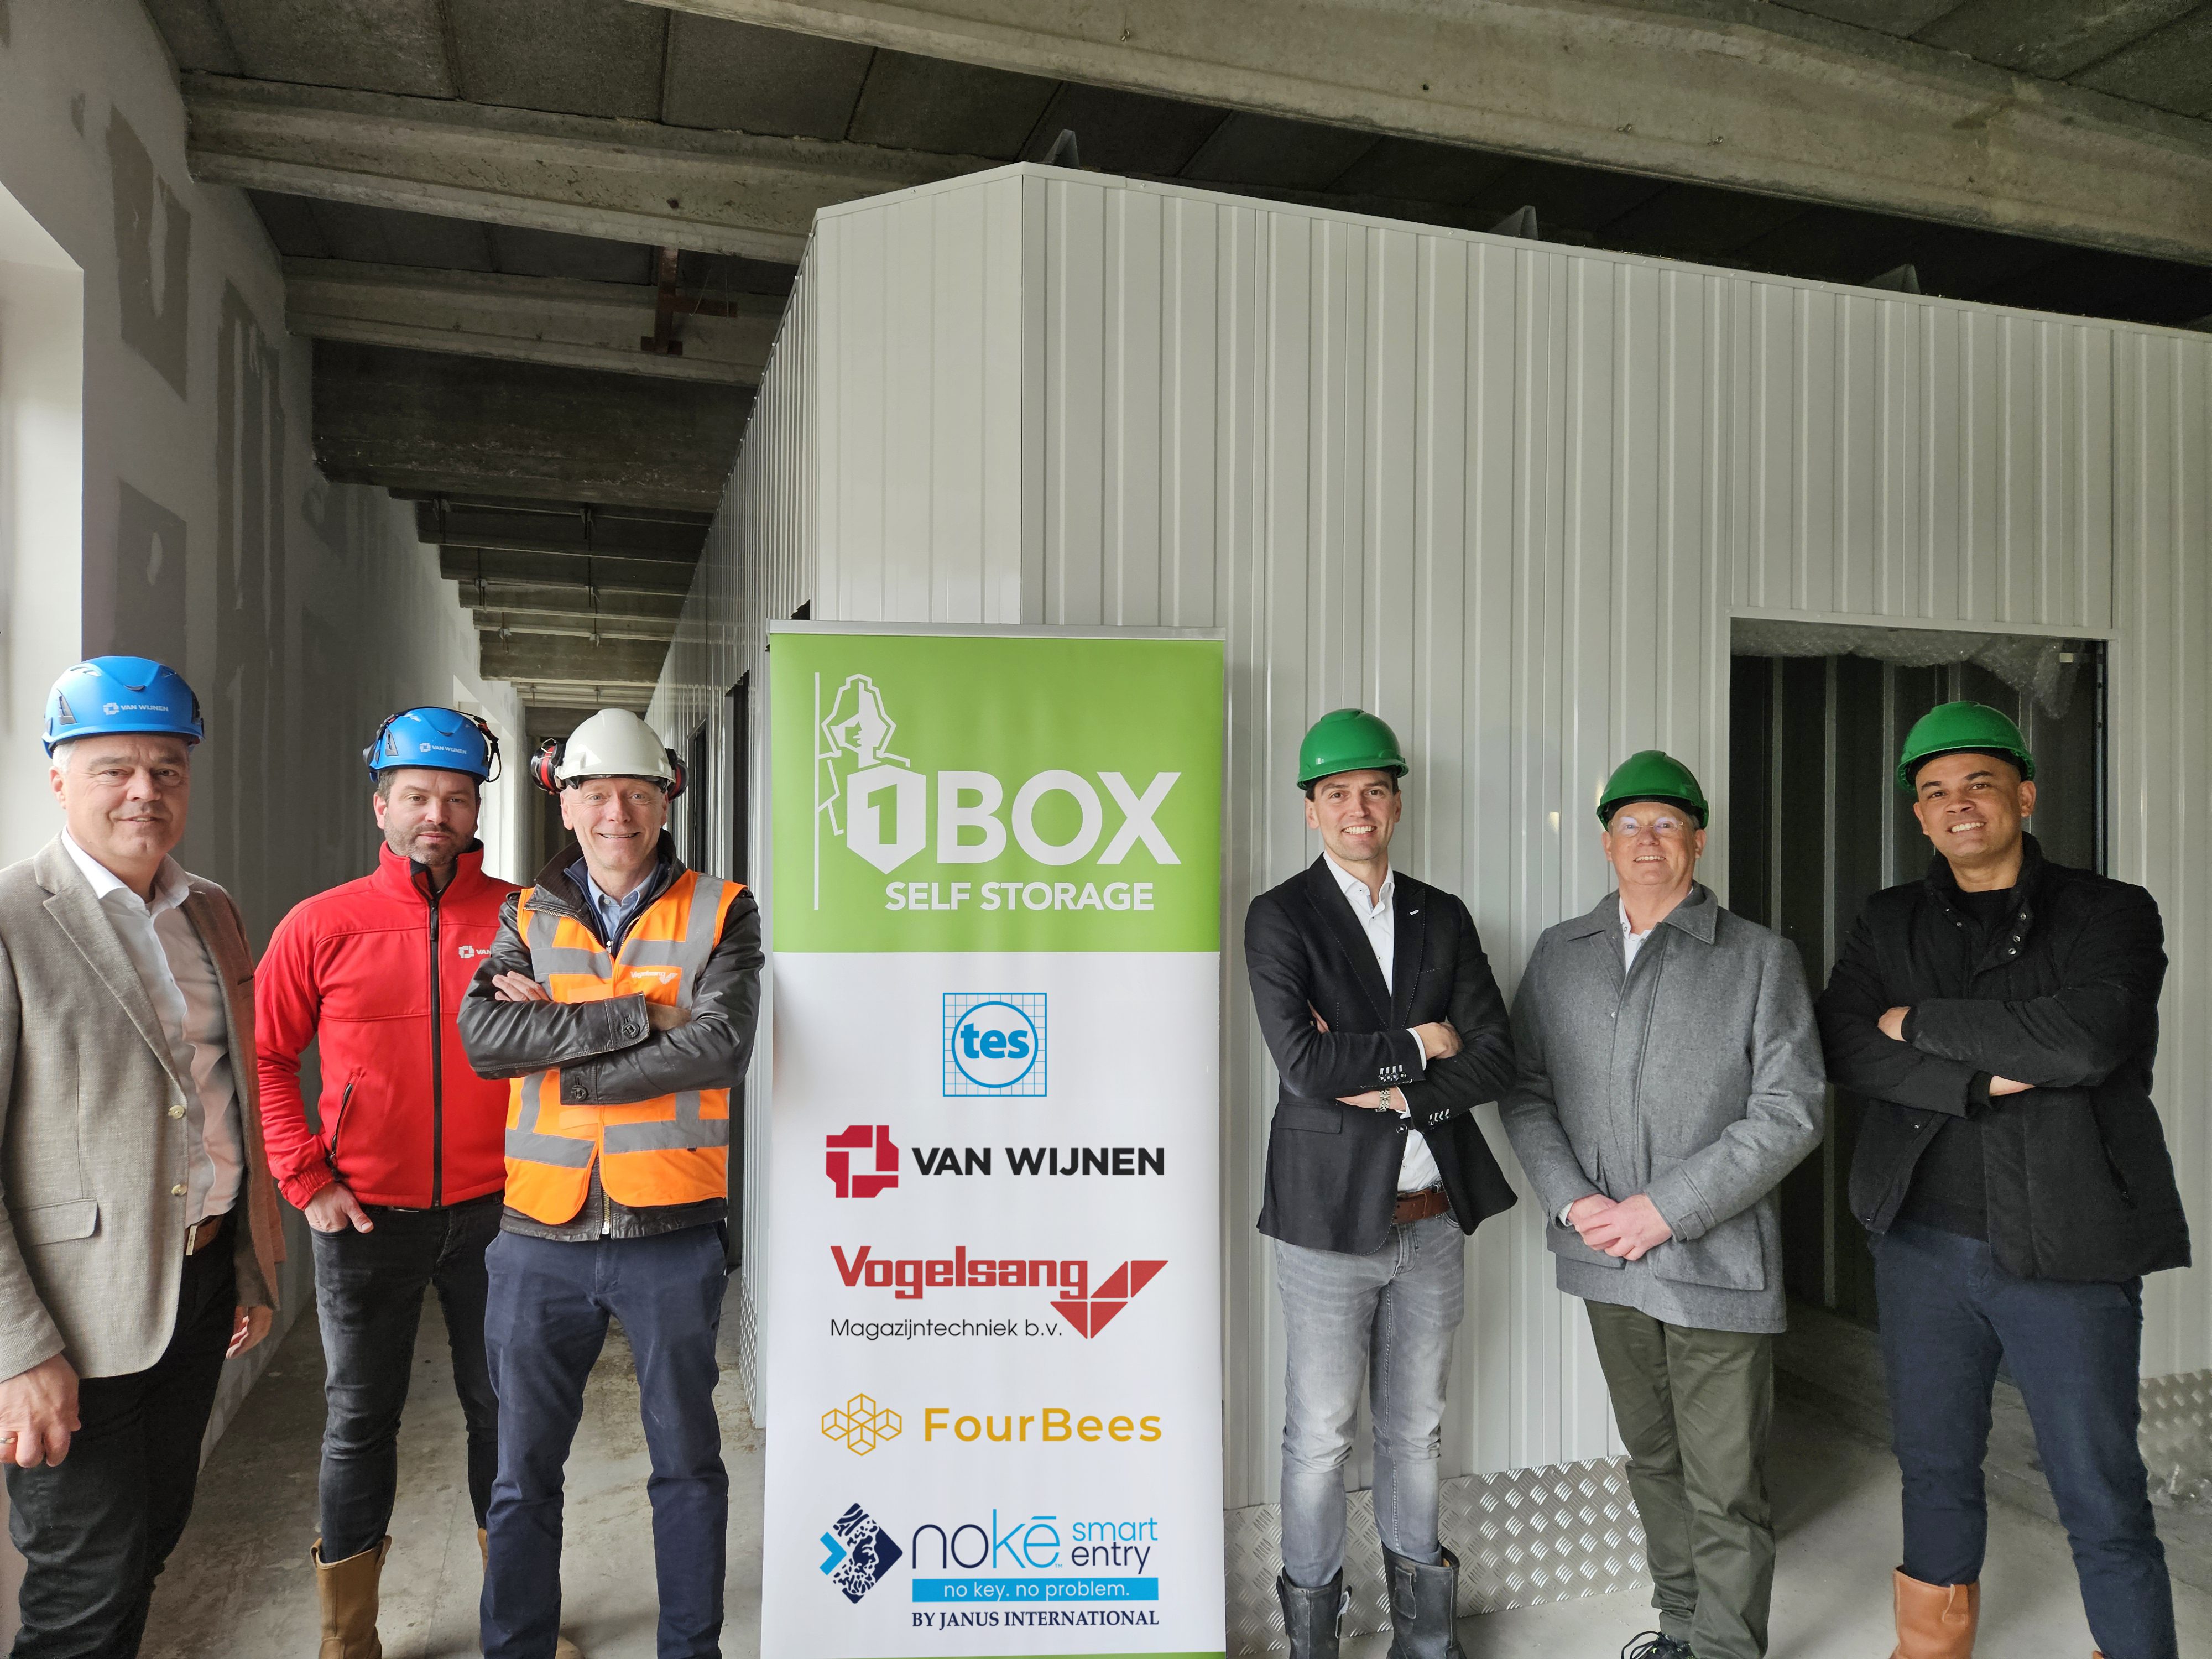 1BOX Self-Storage bouwt tweede vestiging in Heerlen met modernste technologieën